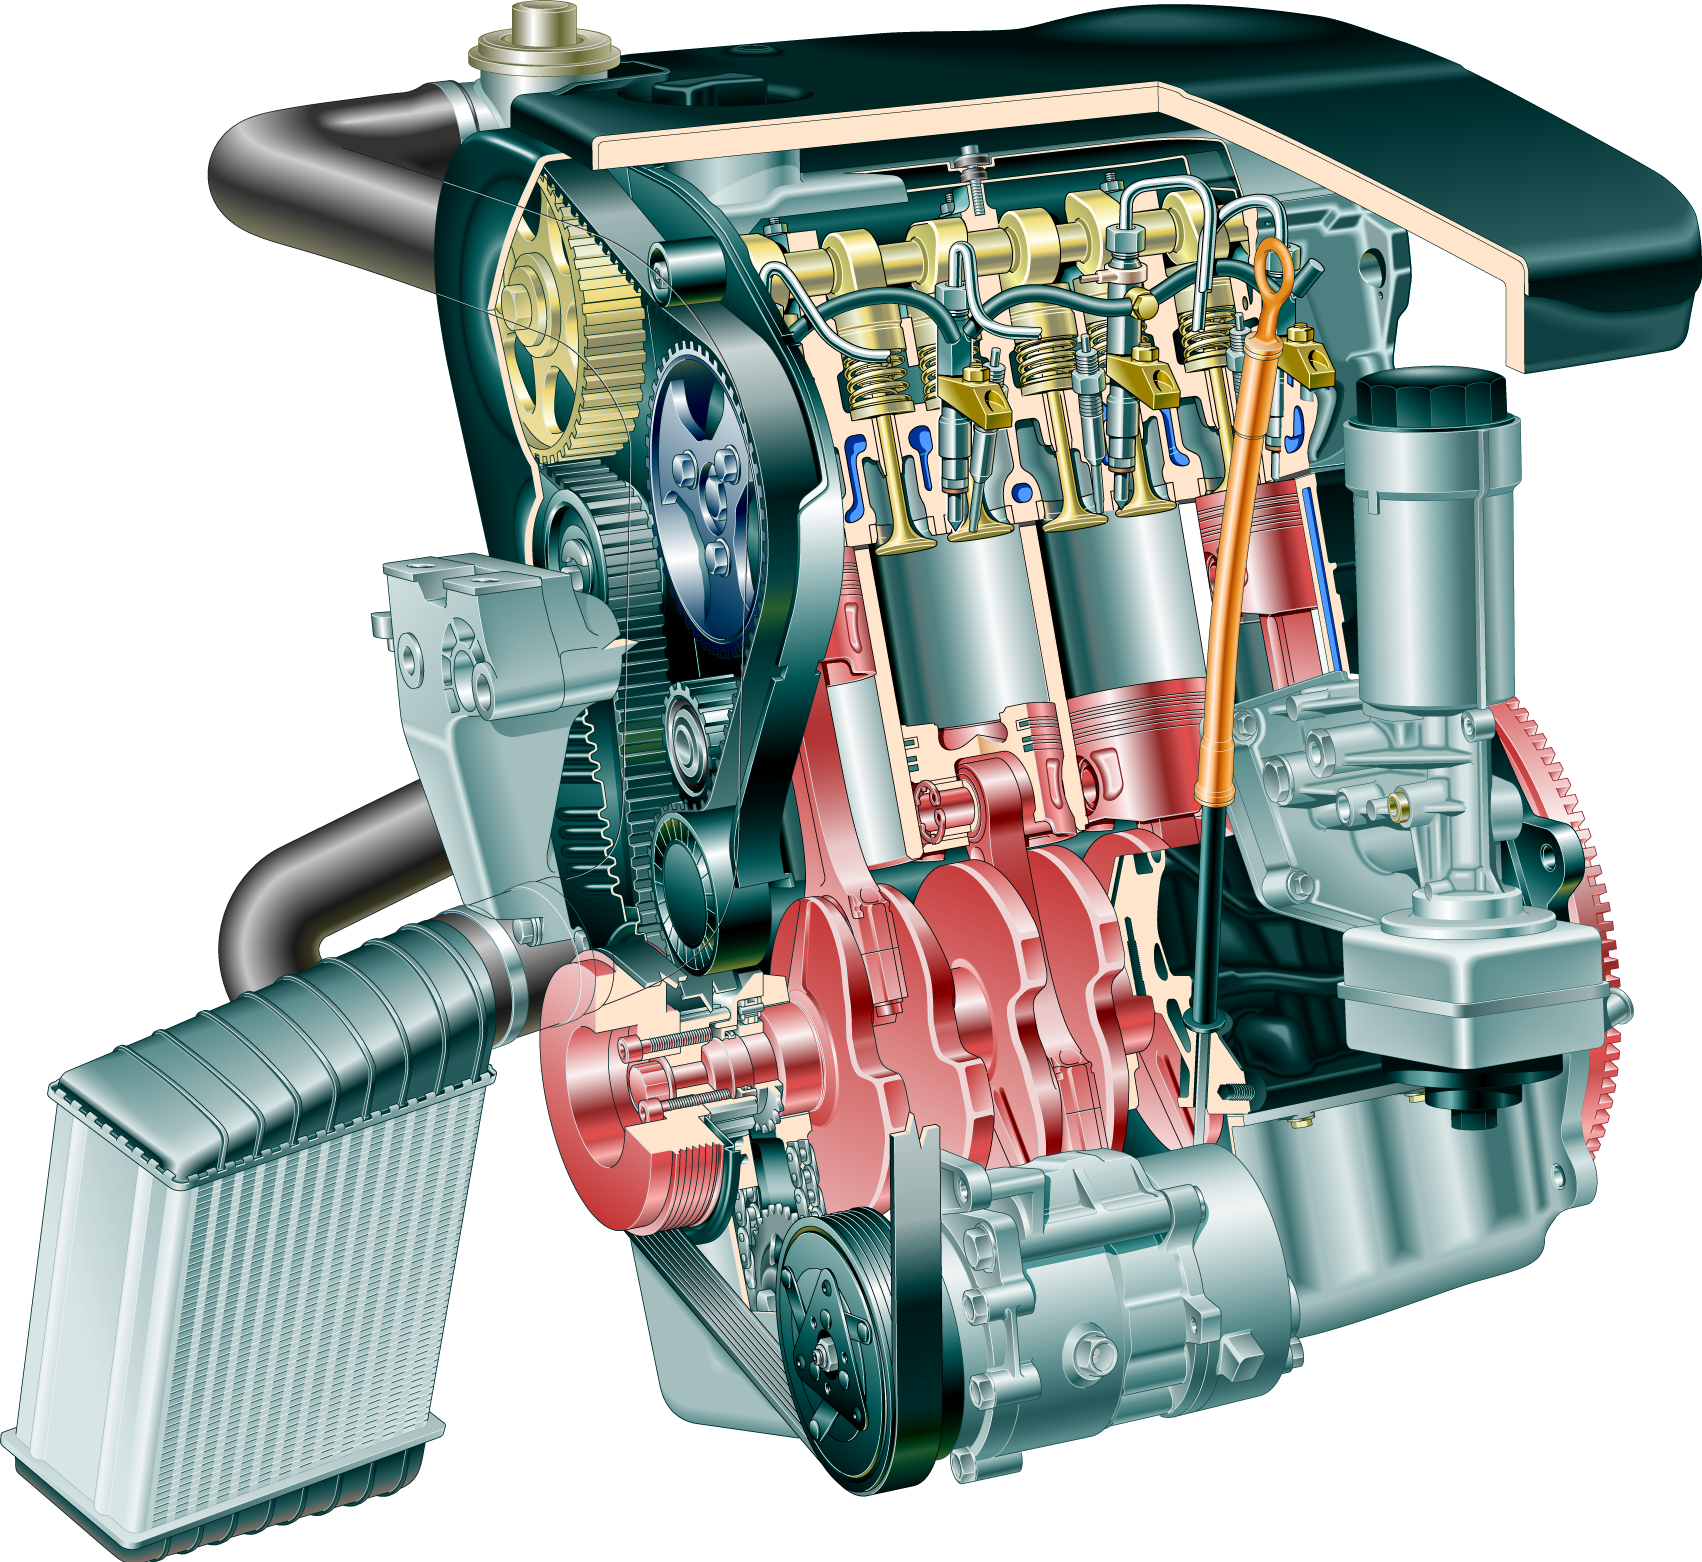 Vznětový motor TDI kód AGR SP